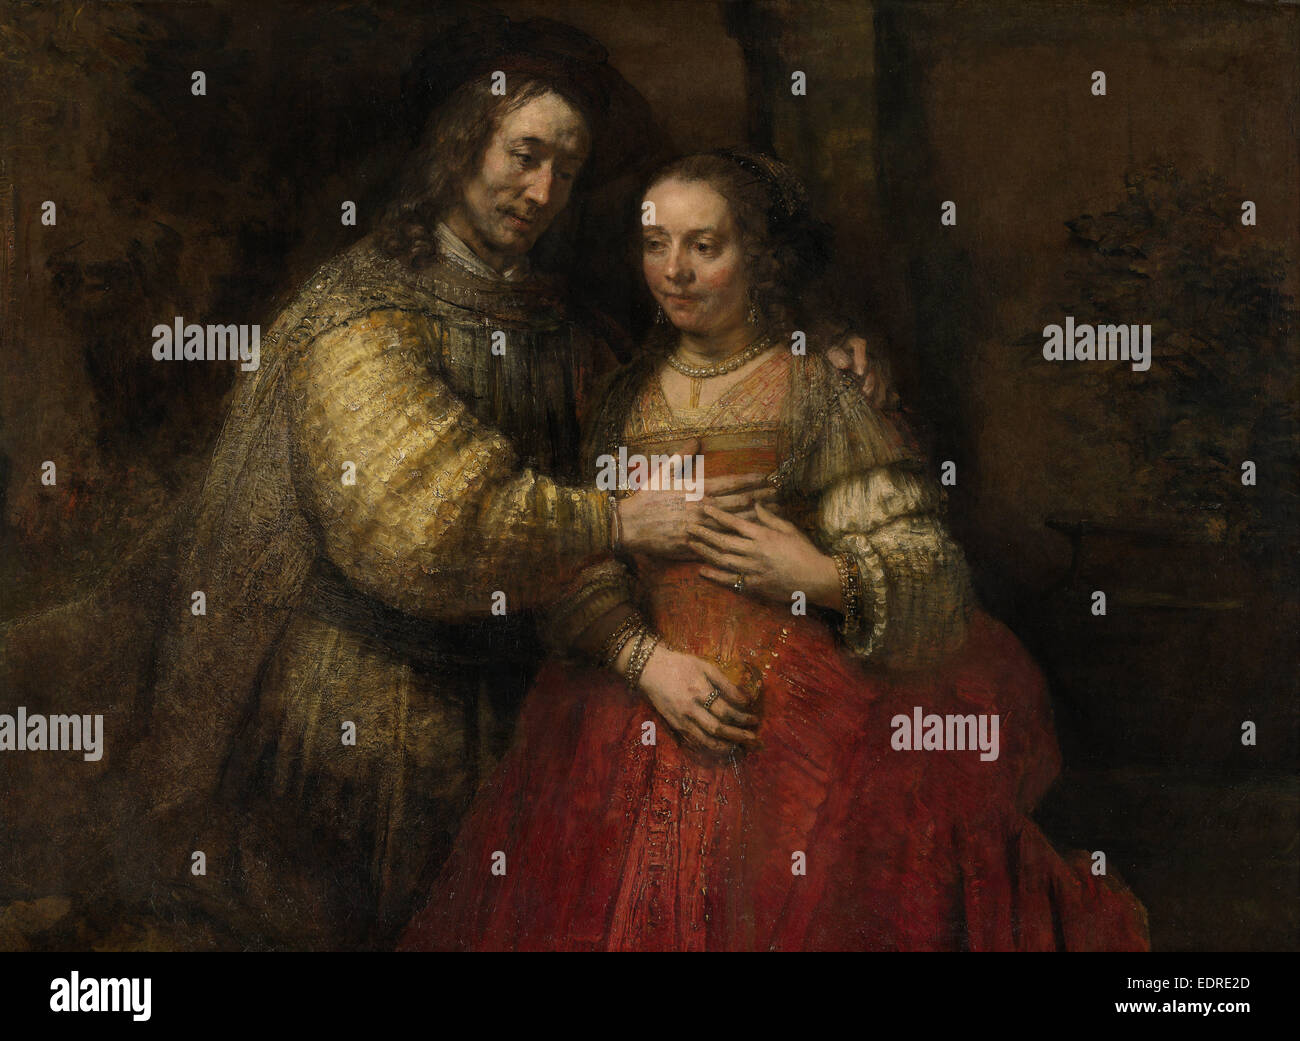 Isaac y Rebecca, conocida como la Novia judía de Rembrandt Harmensz van Rijn, c. 1665 - c. 1669 Foto de stock